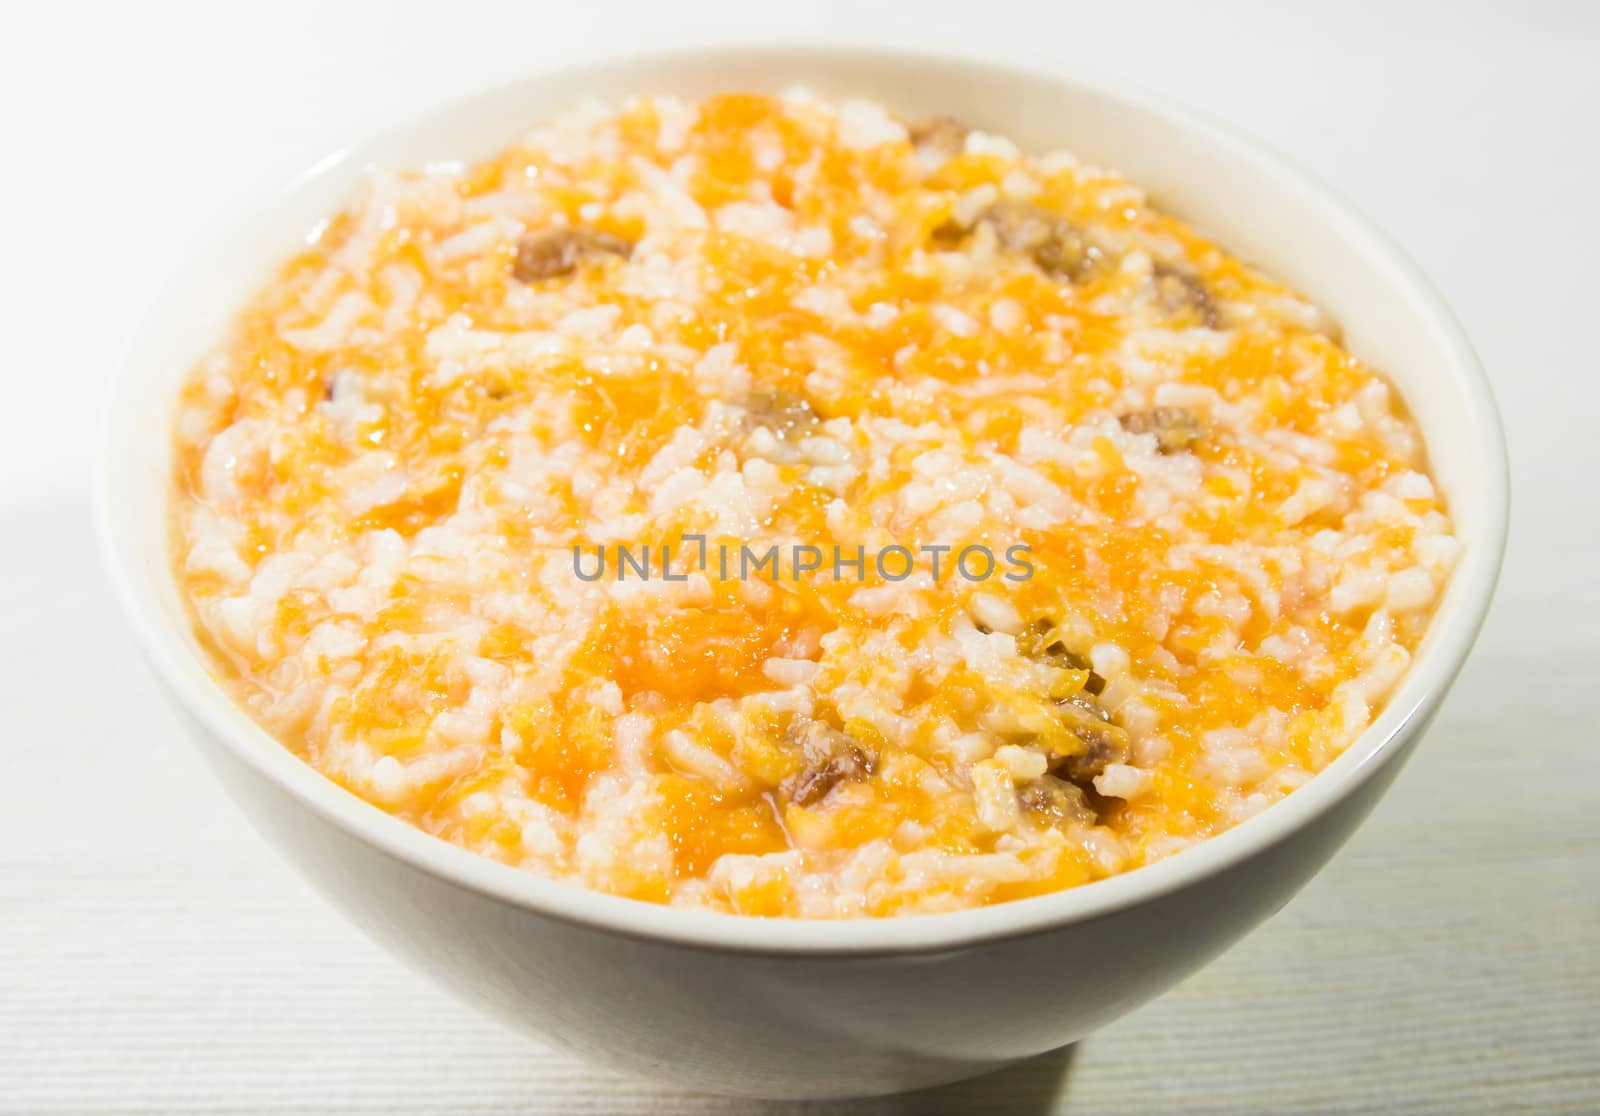 pumpkin rice porridge with raisins in a bowl